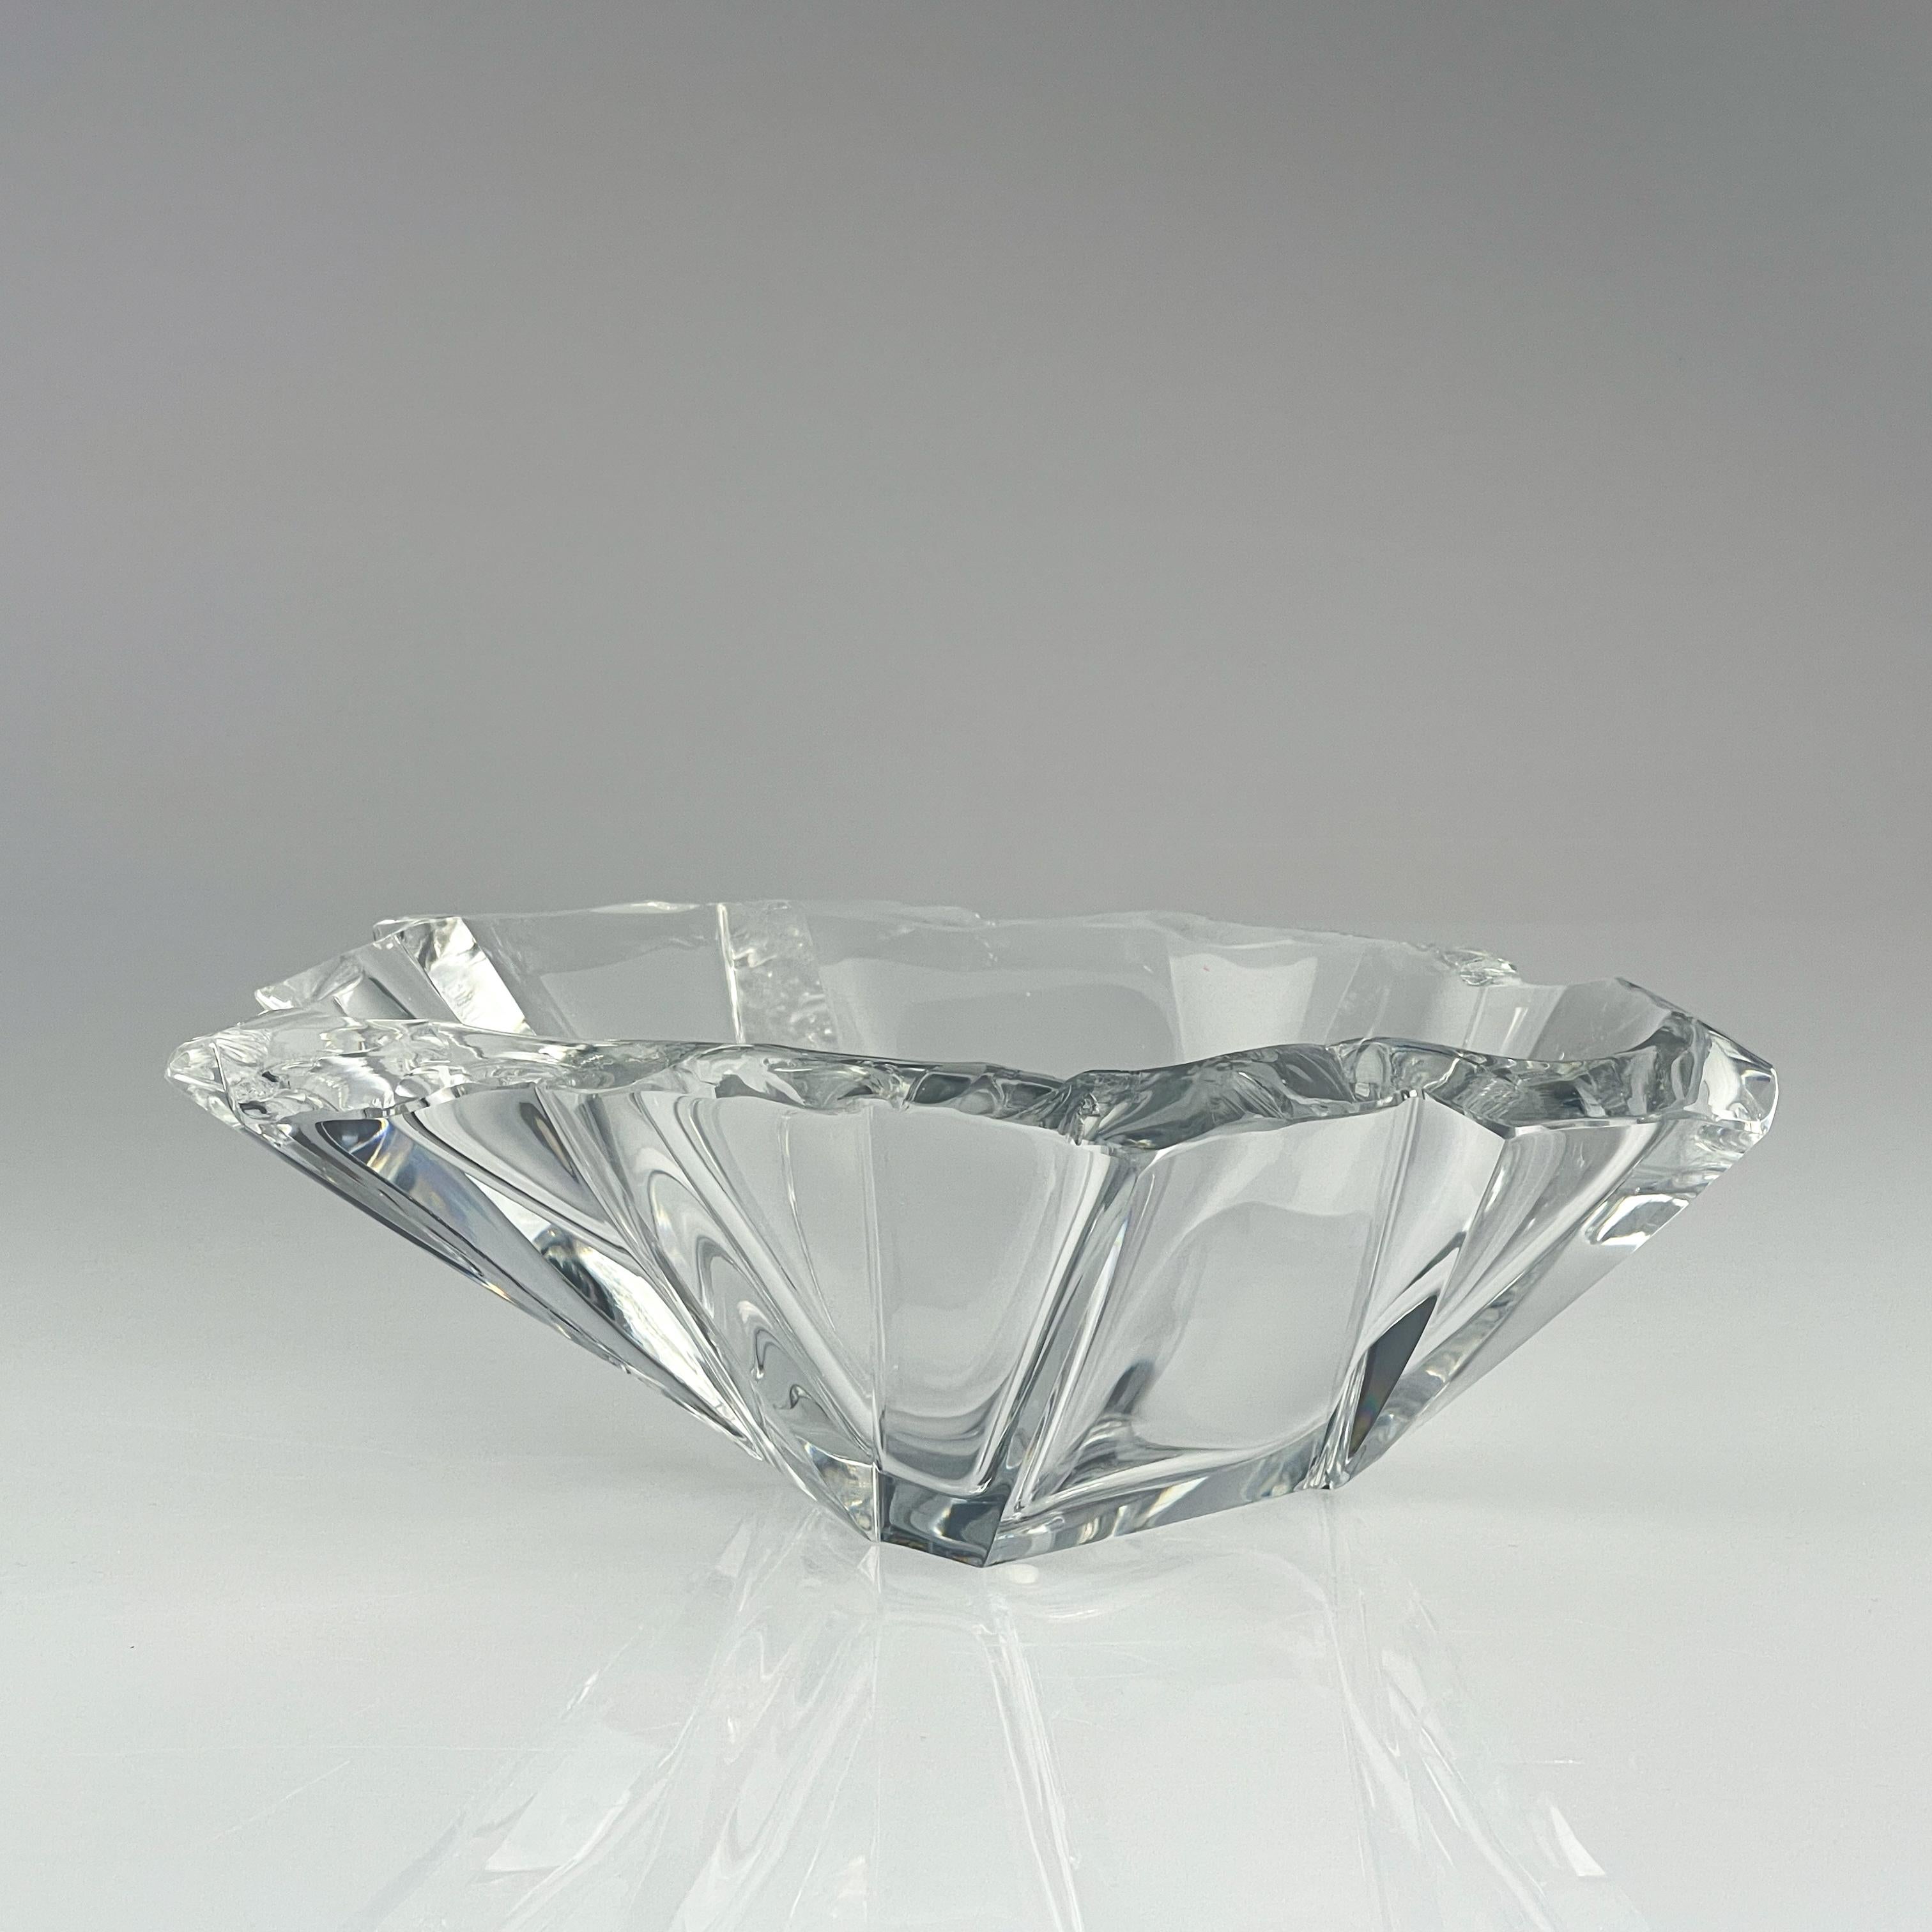 Mid-20th Century Scandinavian Modern Tapio Wirkkala Crystal Glass Art Bowl Handblown Iittala 1960